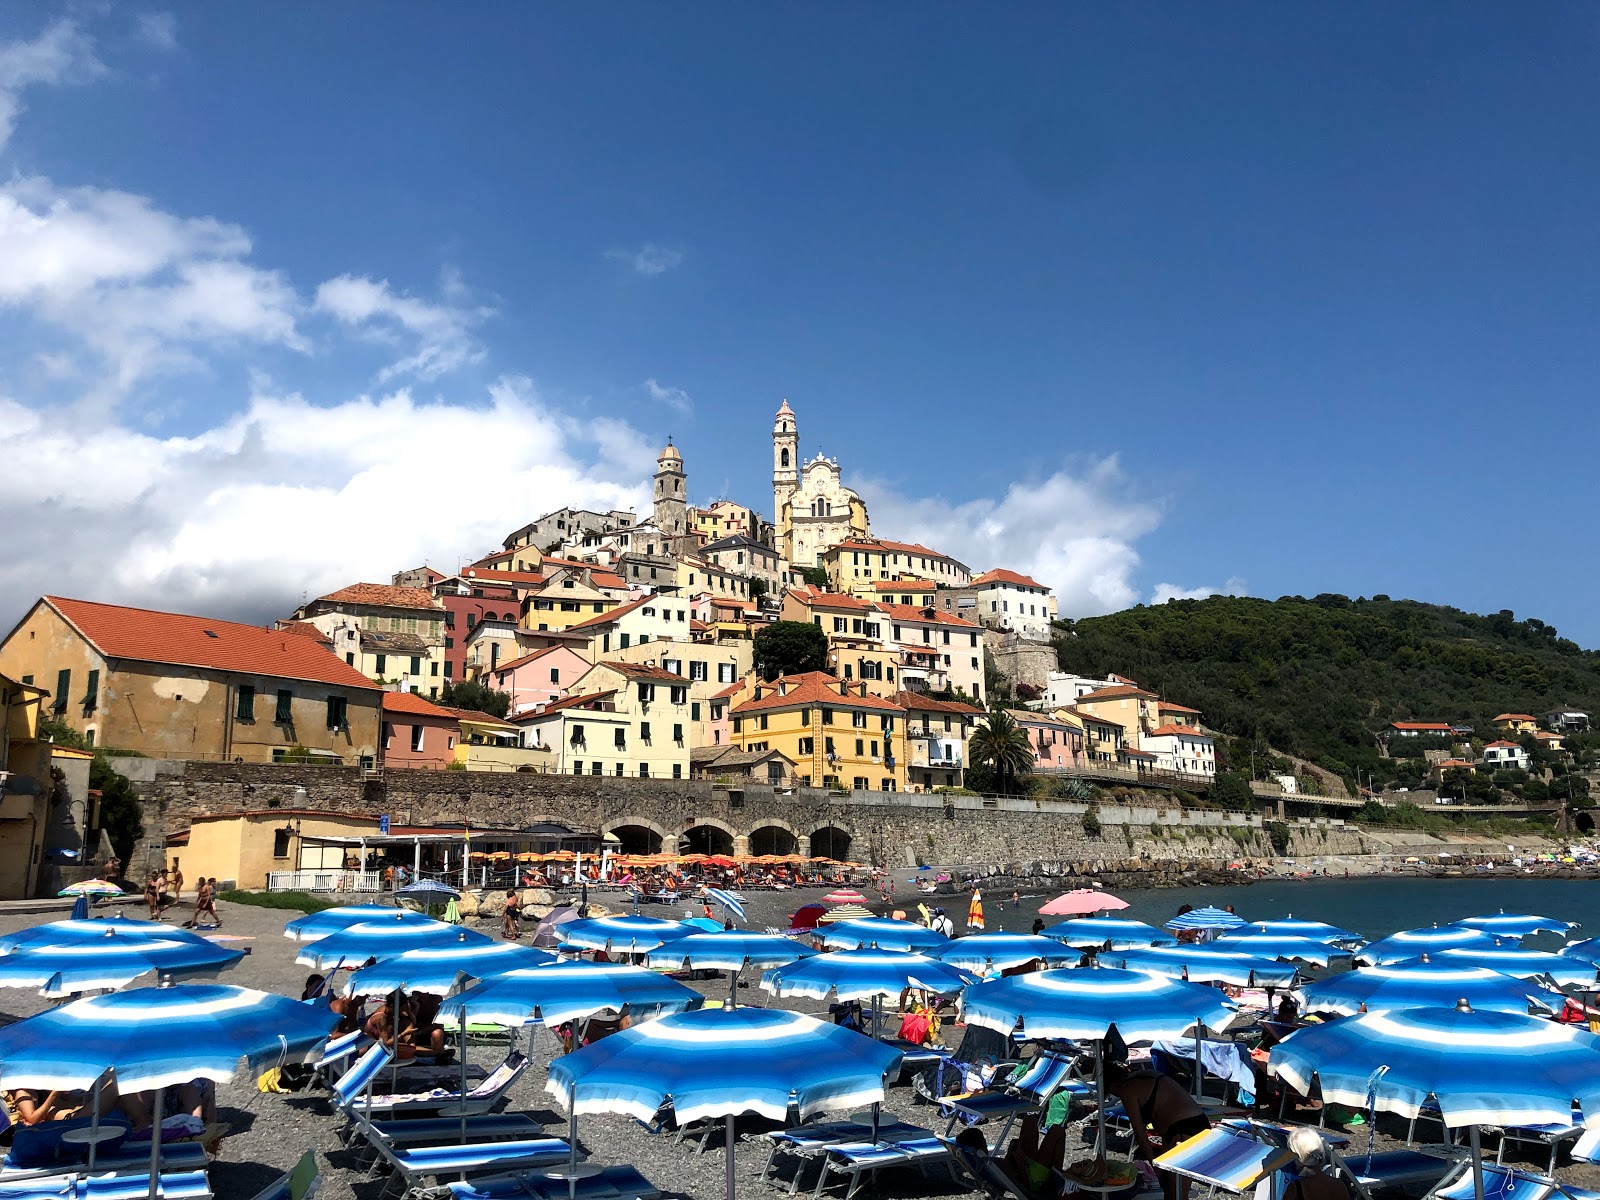 Foto af Spiaggia Cervo - populært sted blandt afslapningskendere